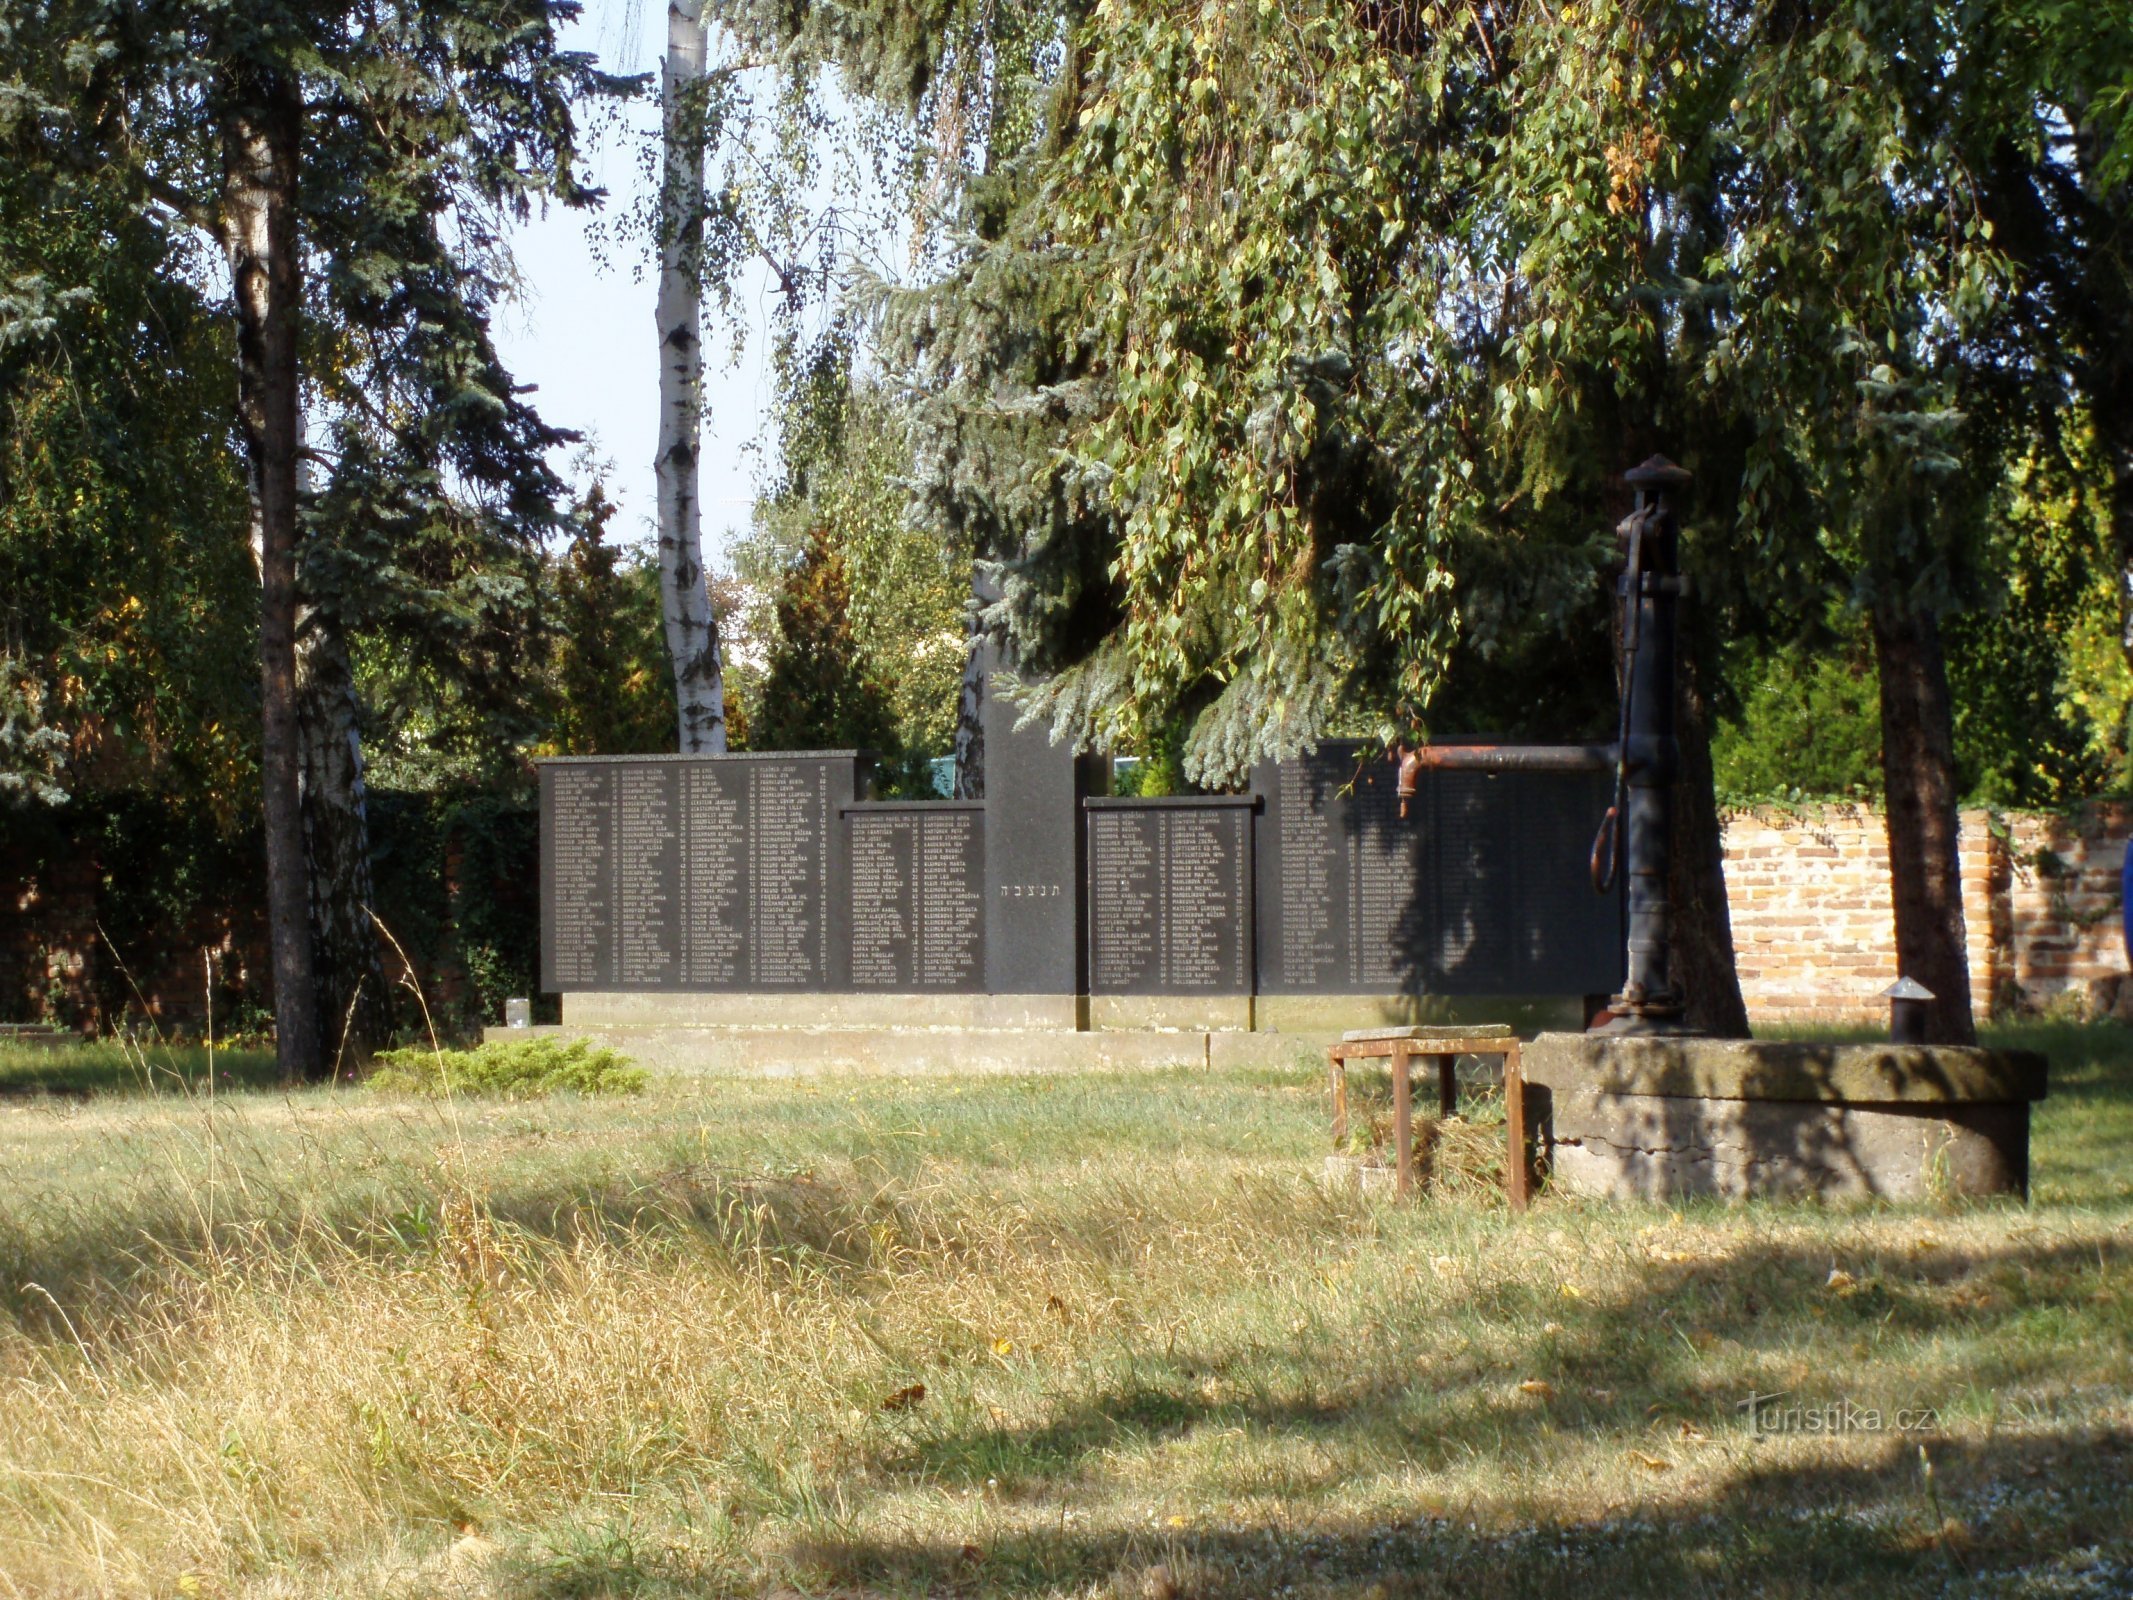 Joodse begraafplaats (Hradec Králové, 18.9.2009 april XNUMX)